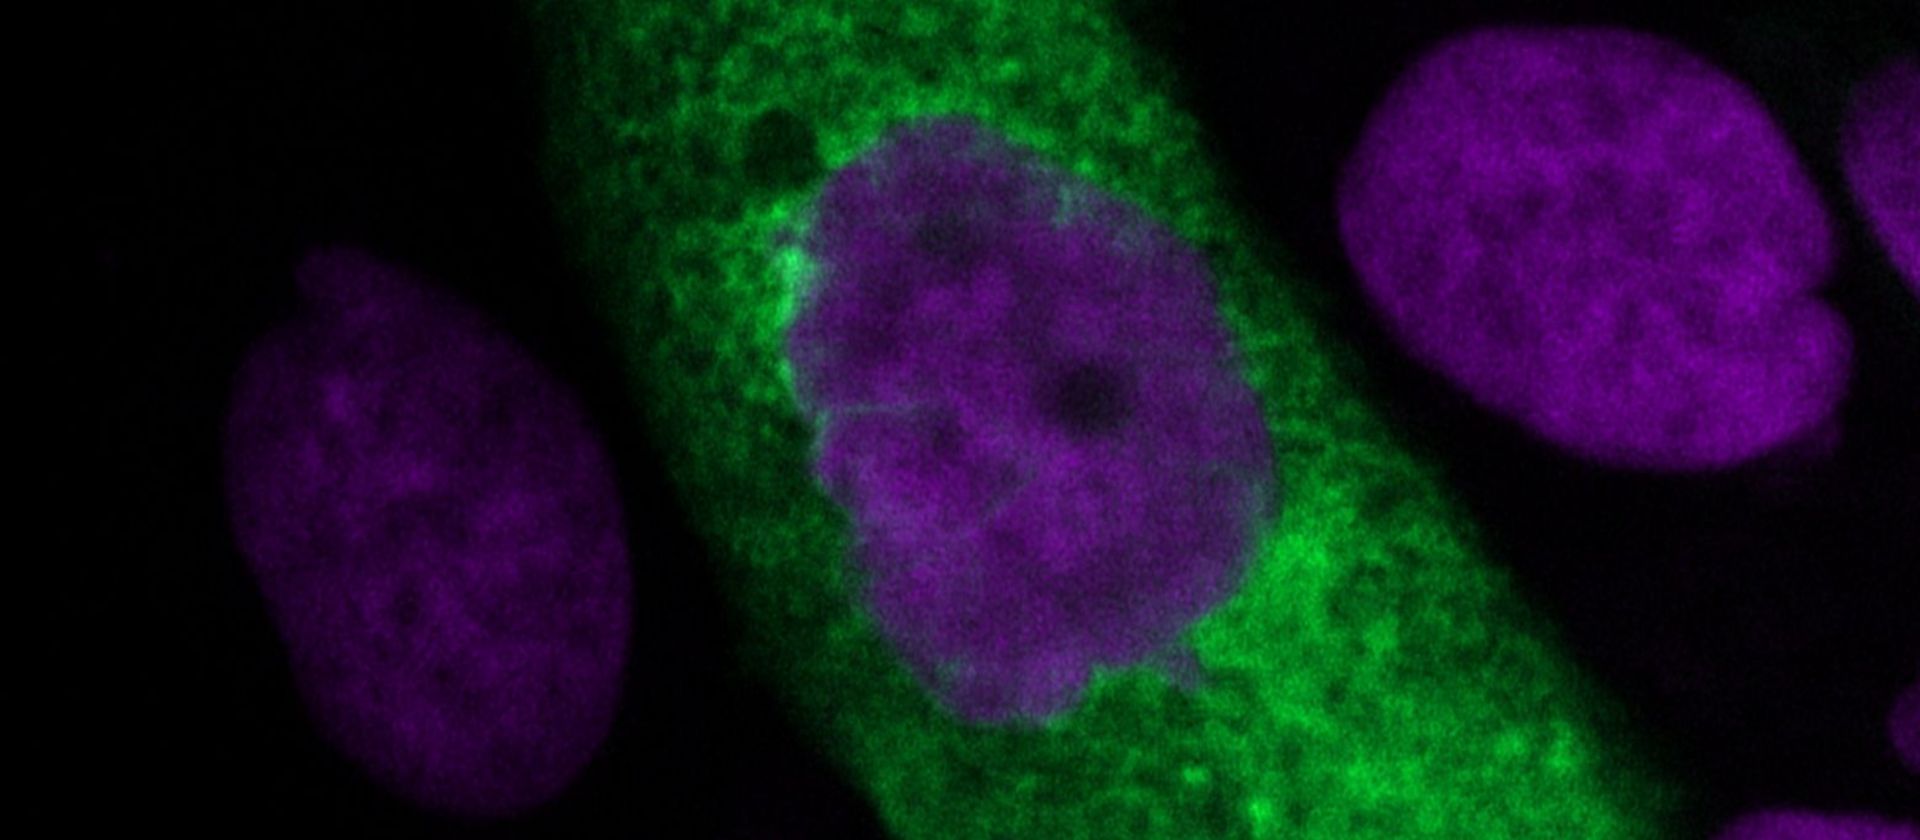 Mit SARS-CoV-2 infizierte Lungenzelle bildet neue Viruspartikel (grün) in ihrem Zytoplasma (violett: Zellkerne). ©HZI/Ulfert Rand